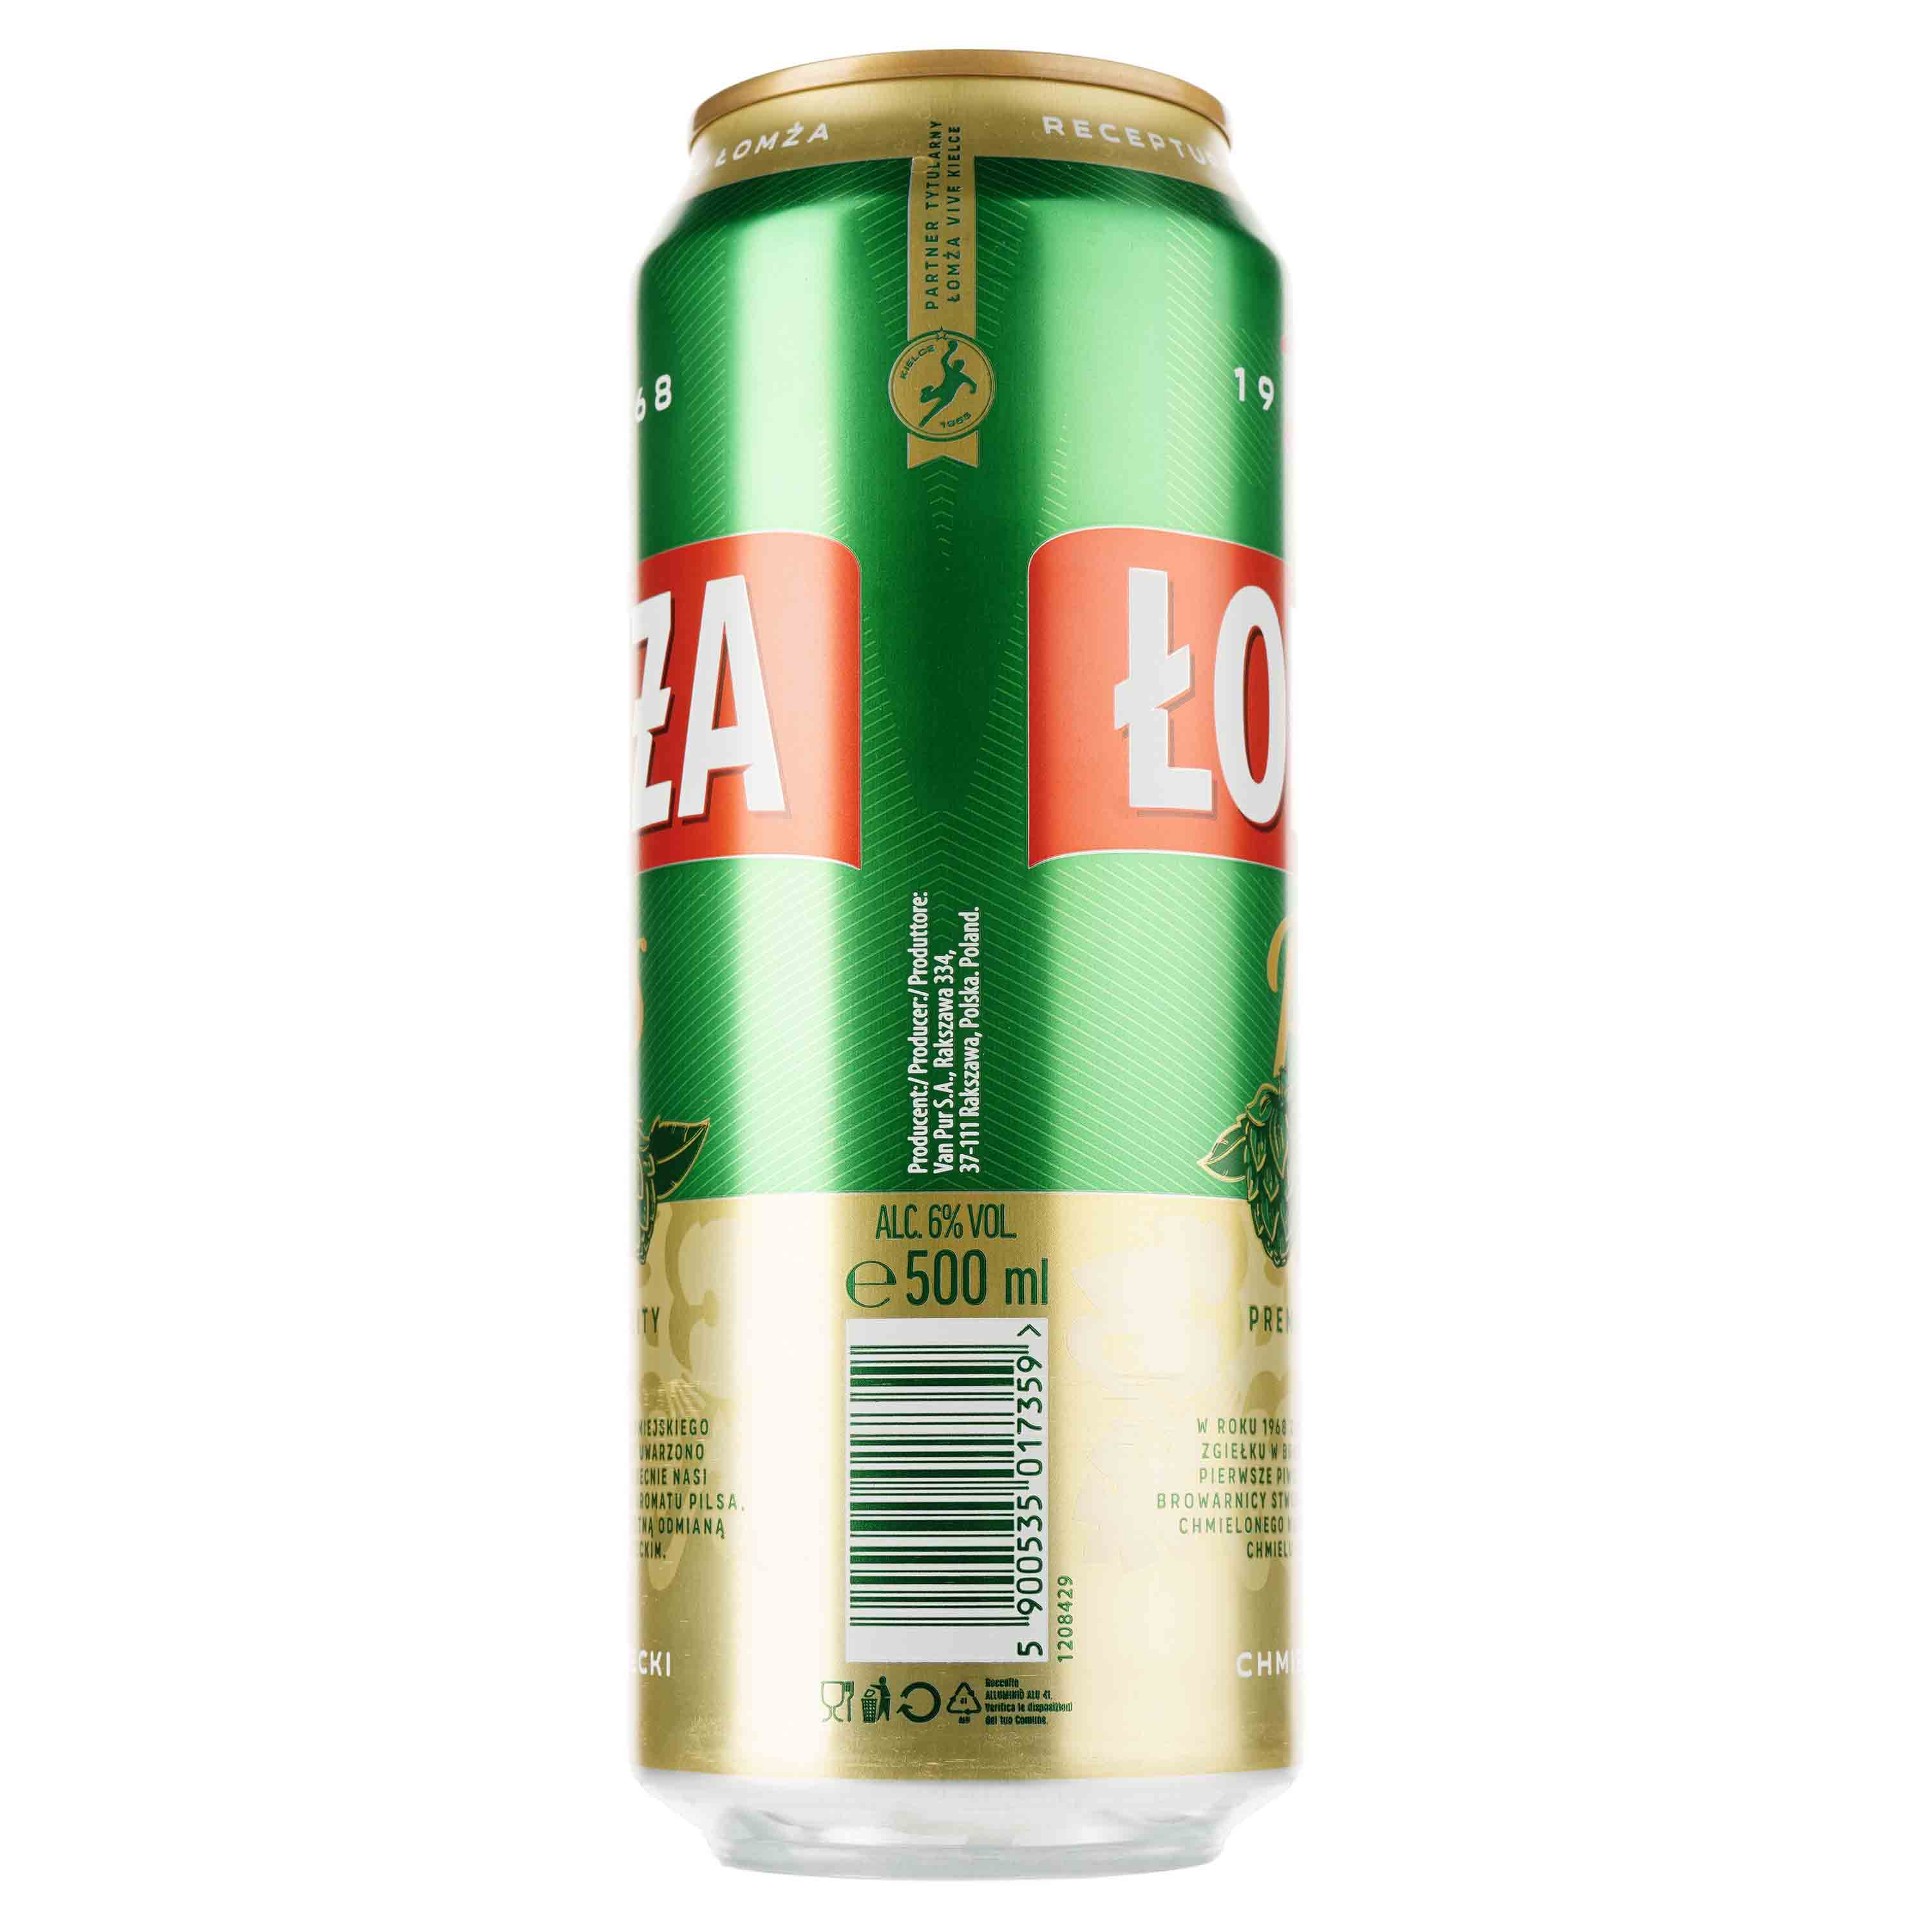 Пиво Lomza Pils світле, 6%, з/б, 0.5 л - фото 2